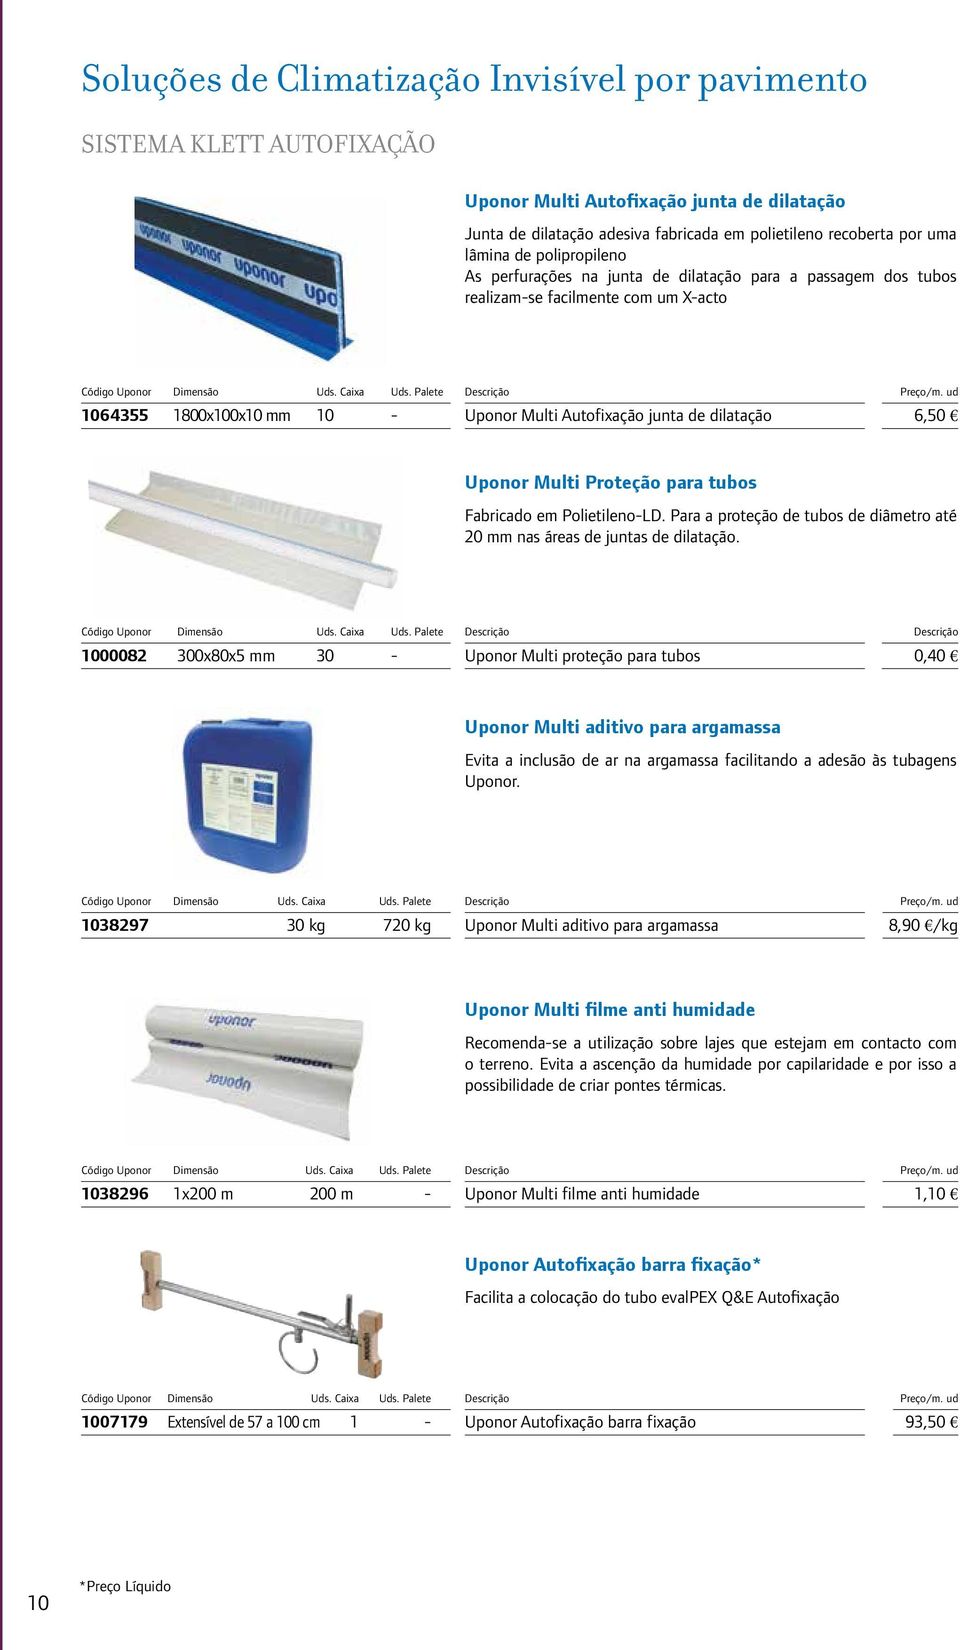 Multi Proteção para tubos Fabricado em Polietileno-LD. Para a proteção de tubos de diâmetro até 20 mm nas áreas de juntas de dilatação.